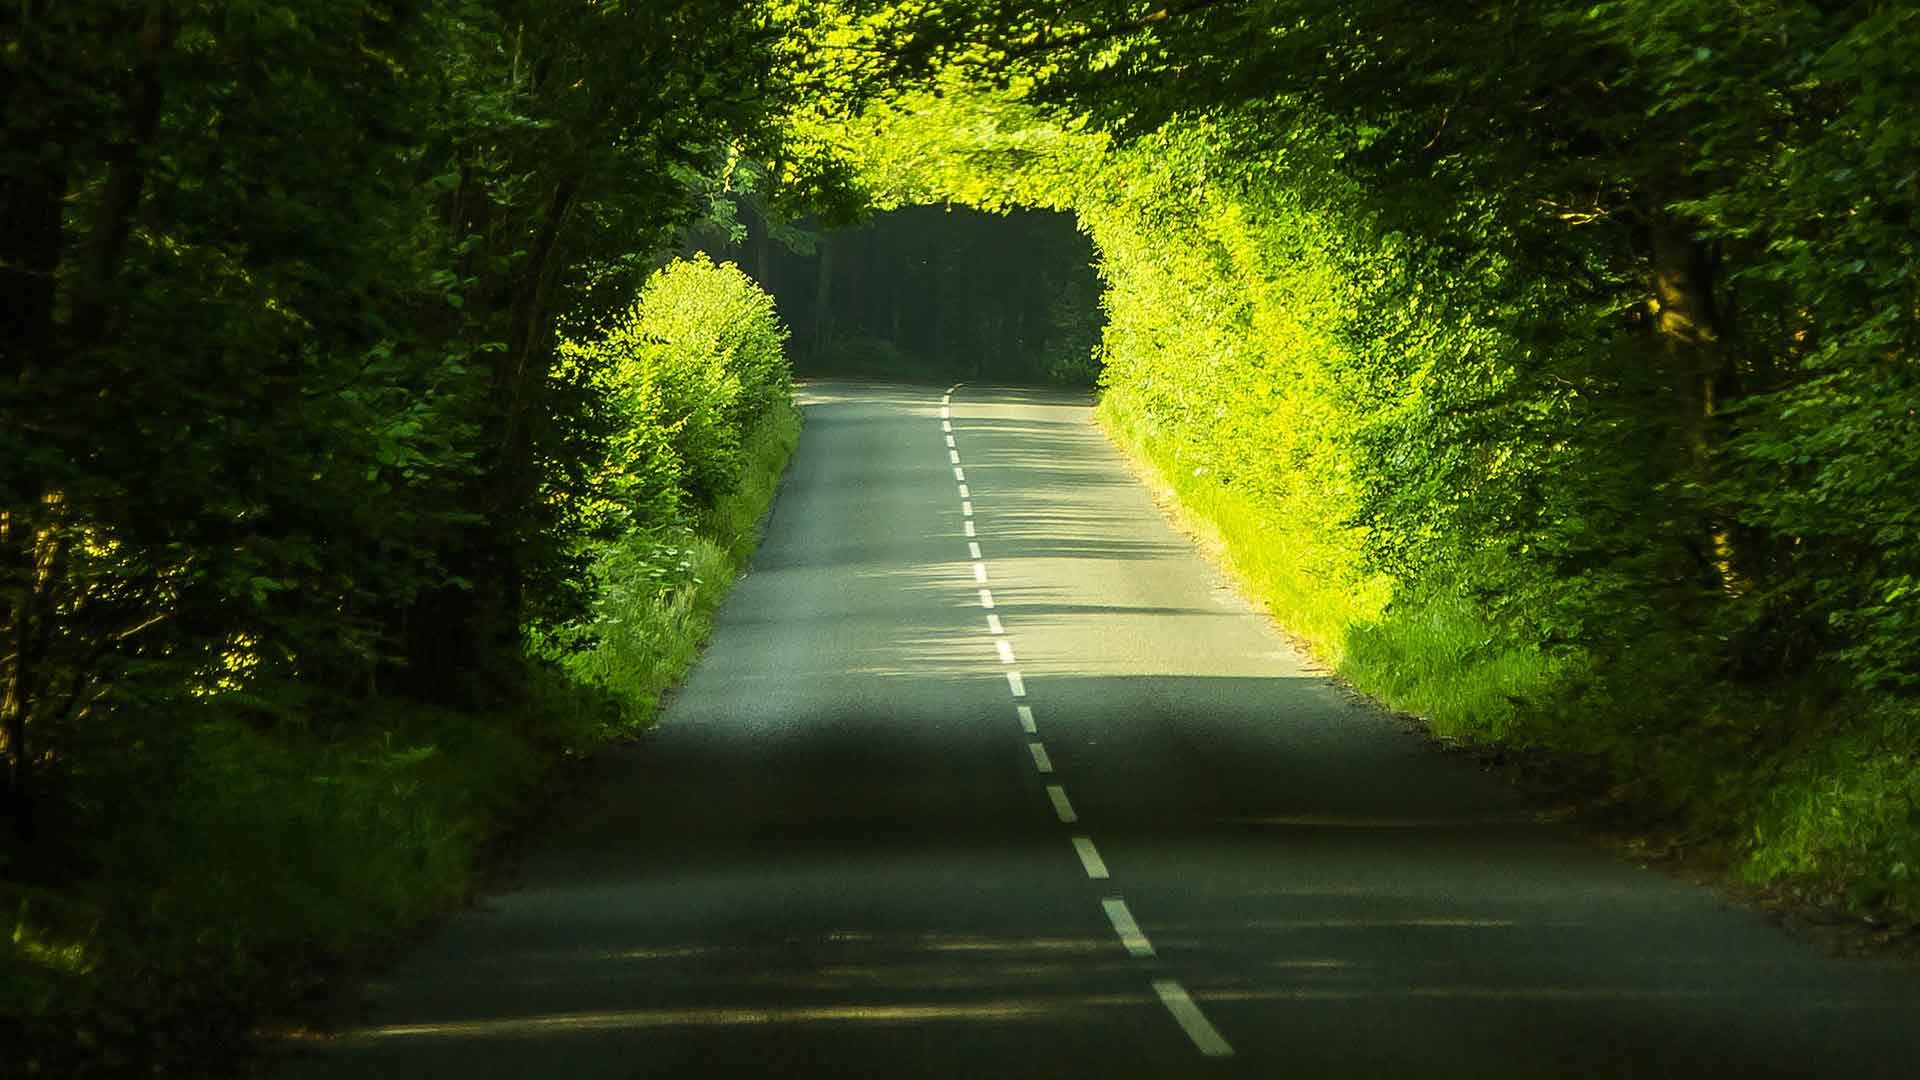 Dorset road